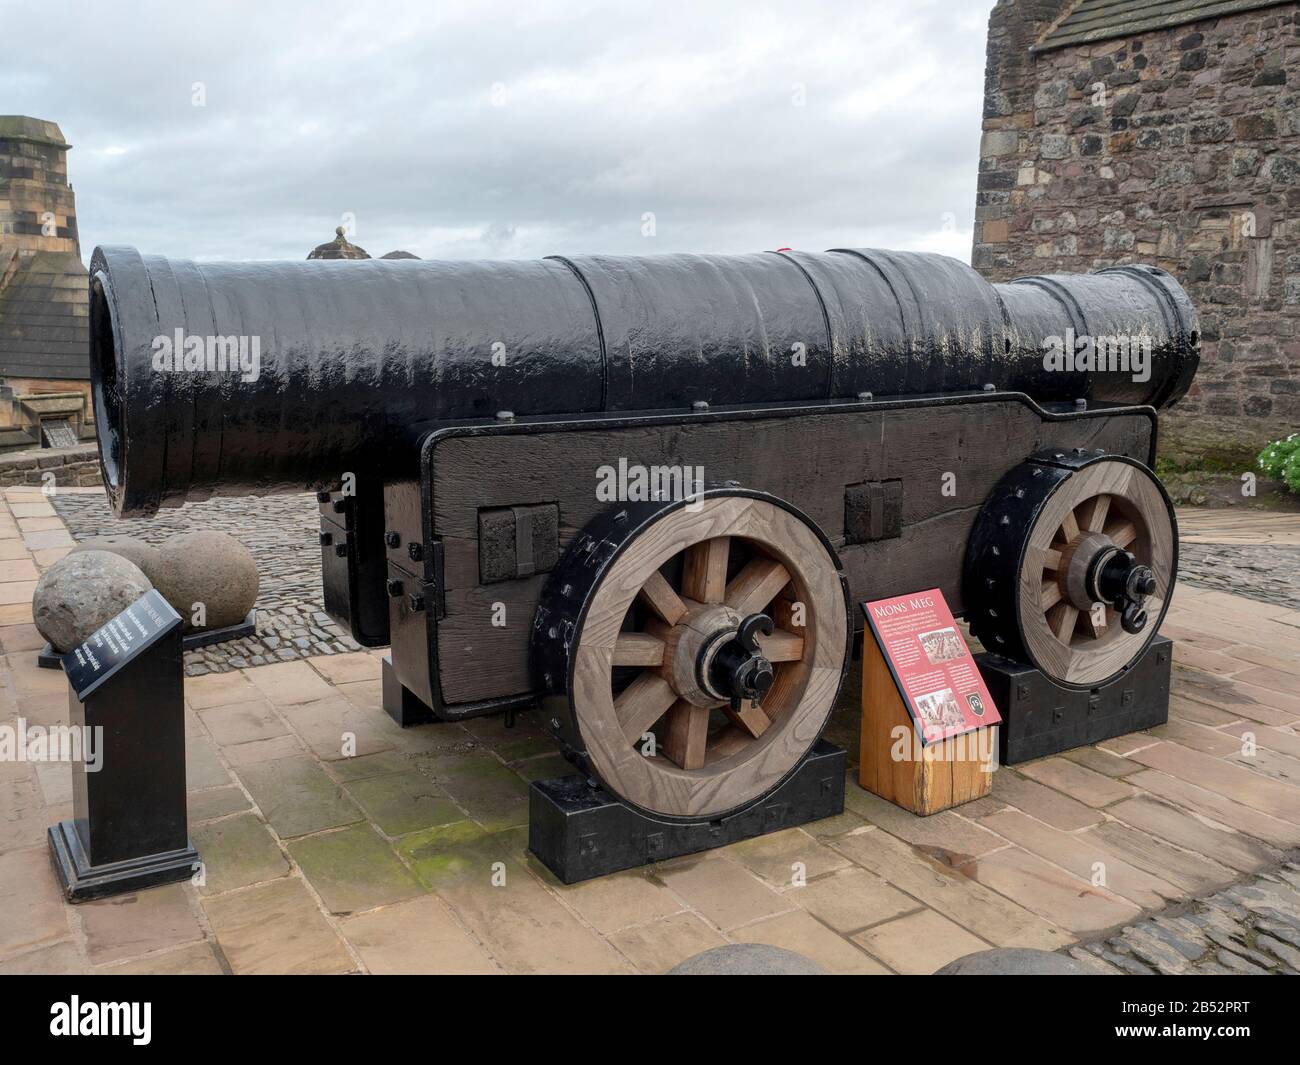 Mons Meg è un bombardo medievale, un tipo di cannone, situato al Castello di Edimburgo in Scozia. Foto Stock